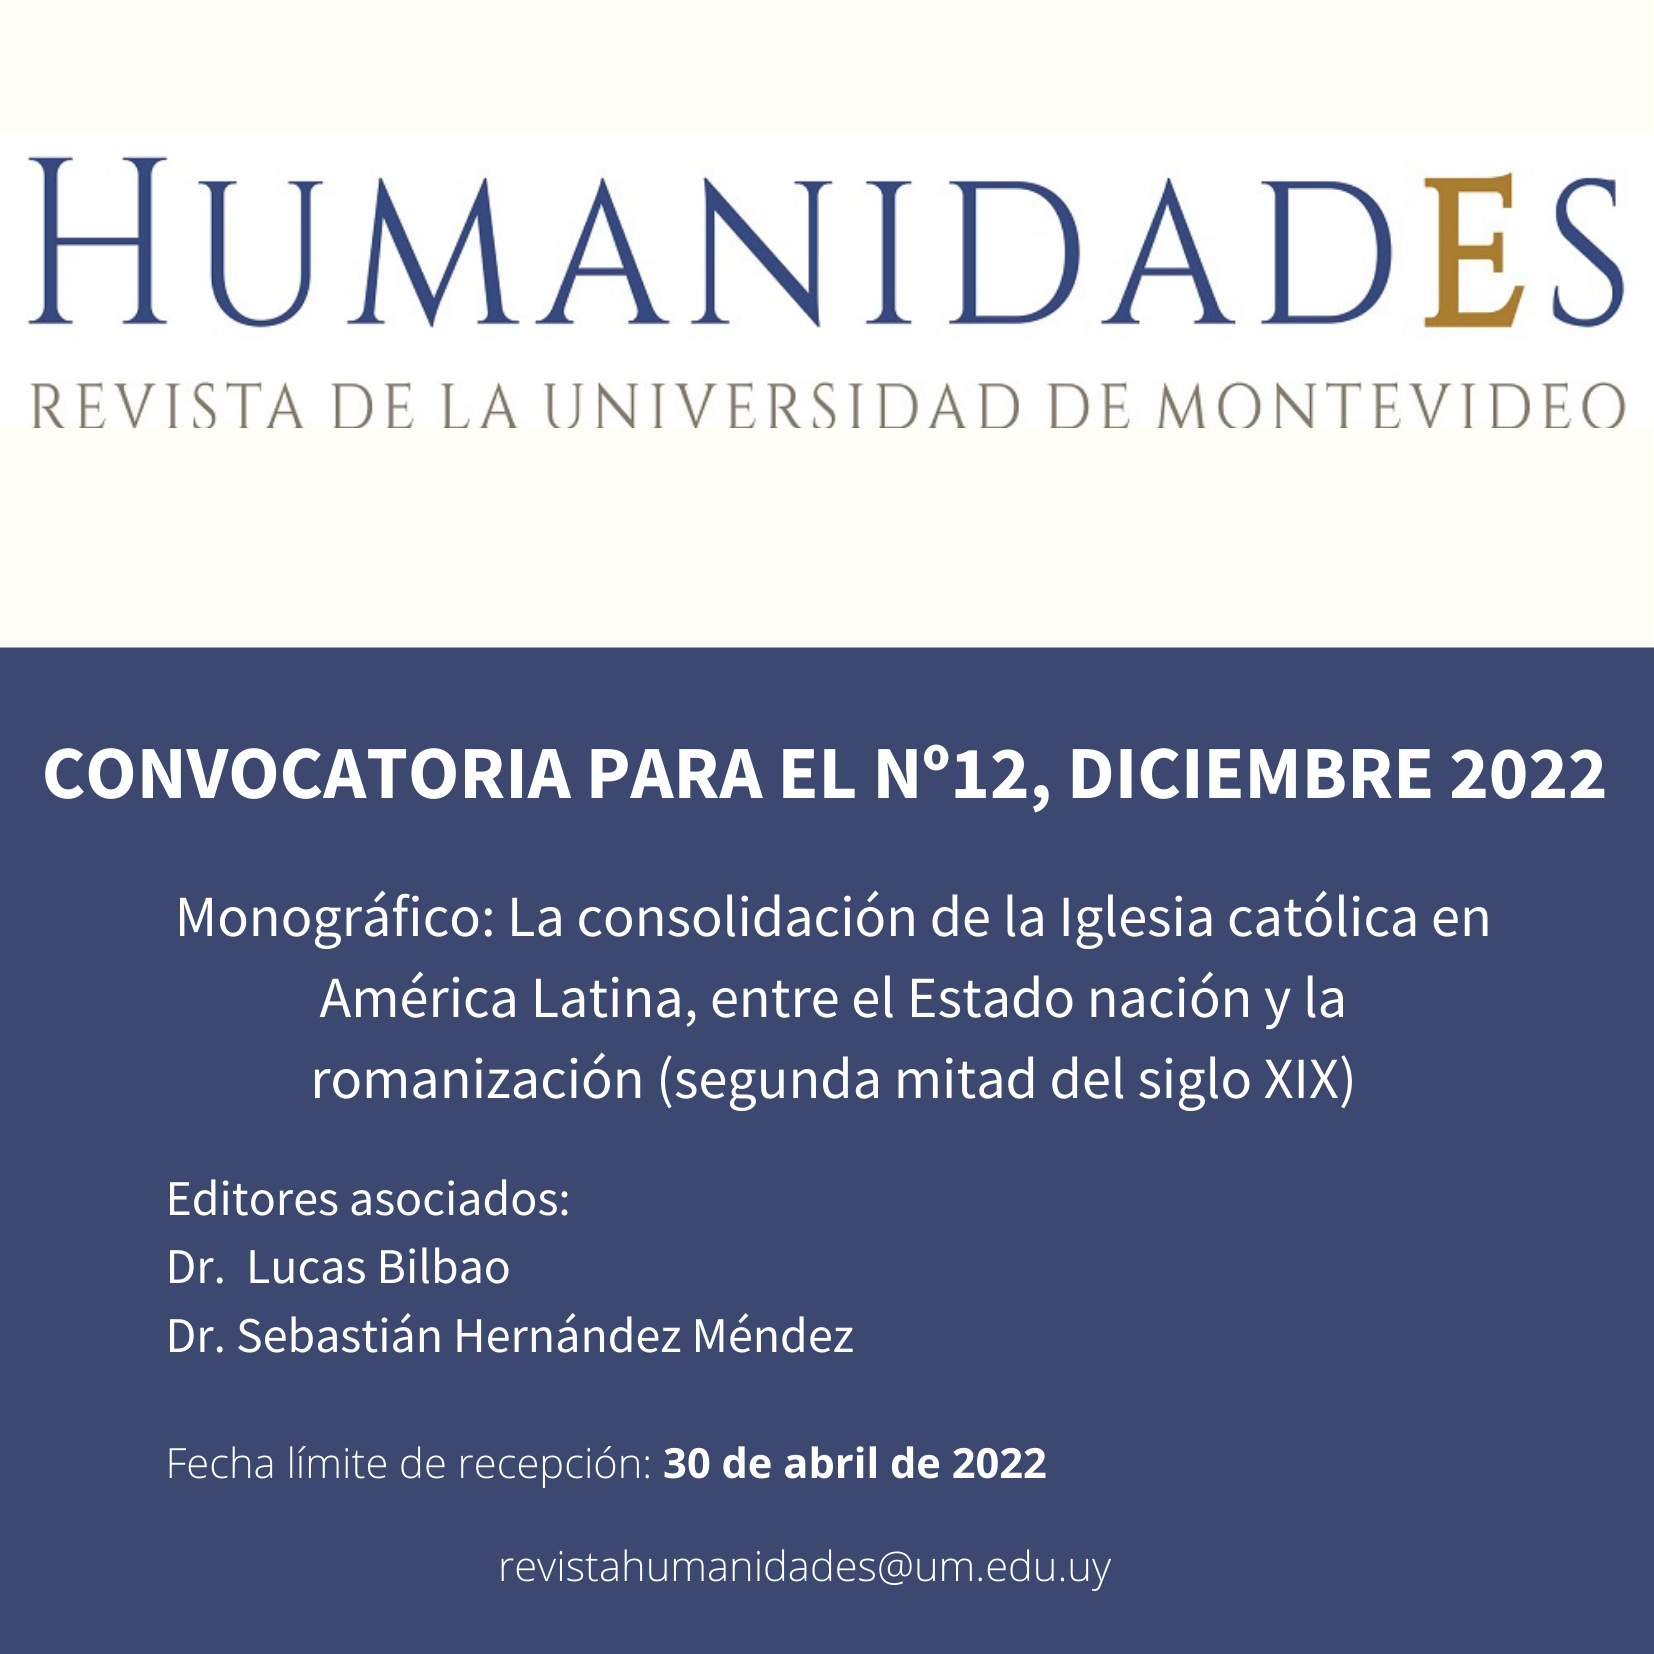 Convocatoria / Call for Papers / Chamada de Trabalhos, Nº12, diciembre 2022  - Asociación de revistas académicas de Humanidades y Ciencias Sociales